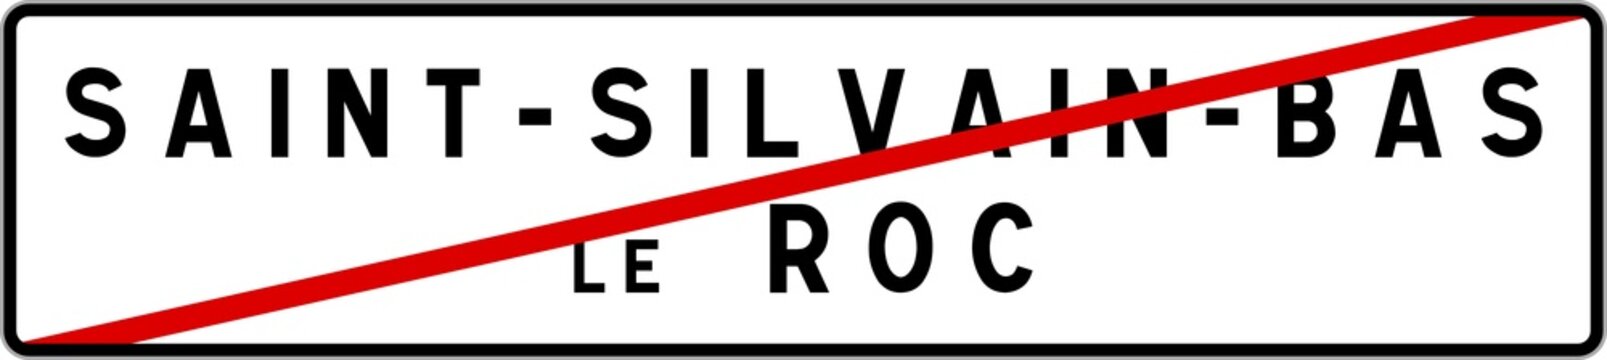 Panneau sortie ville agglomération Saint-Silvain-Bas-le-Roc / Town exit sign Saint-Silvain-Bas-le-Roc